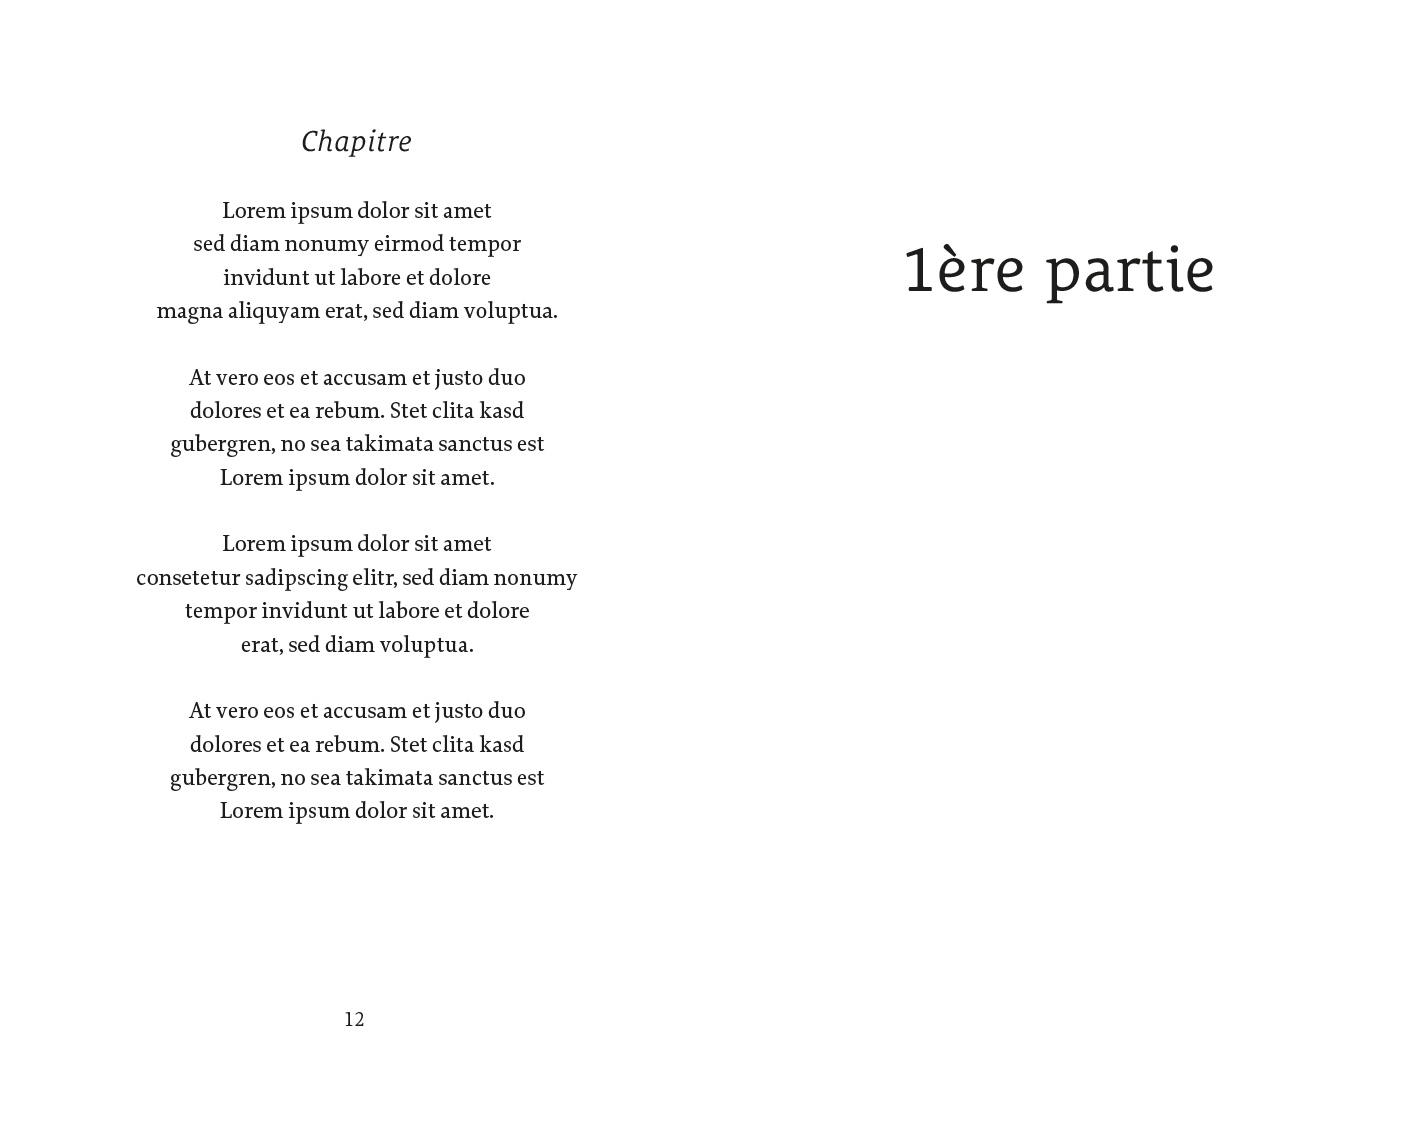 Exemple d'une mise en page de poésie classique version simple